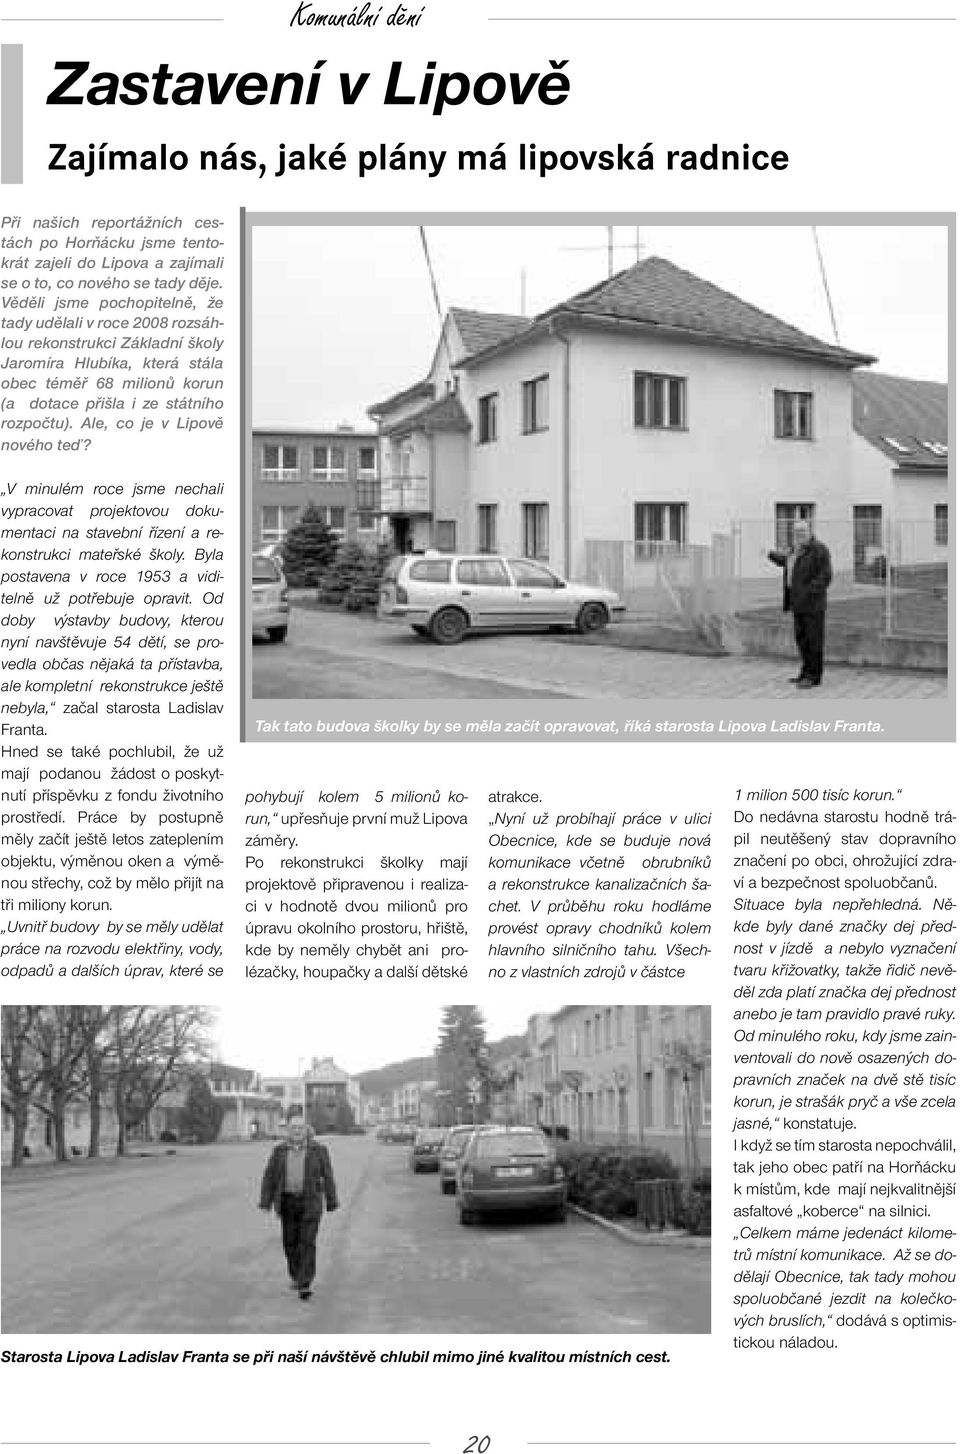 Ale, co je v Lipově nového teď? V minulém roce jsme nechali vypracovat projektovou dokumentaci na stavební řízení a rekonstrukci mateřské školy.